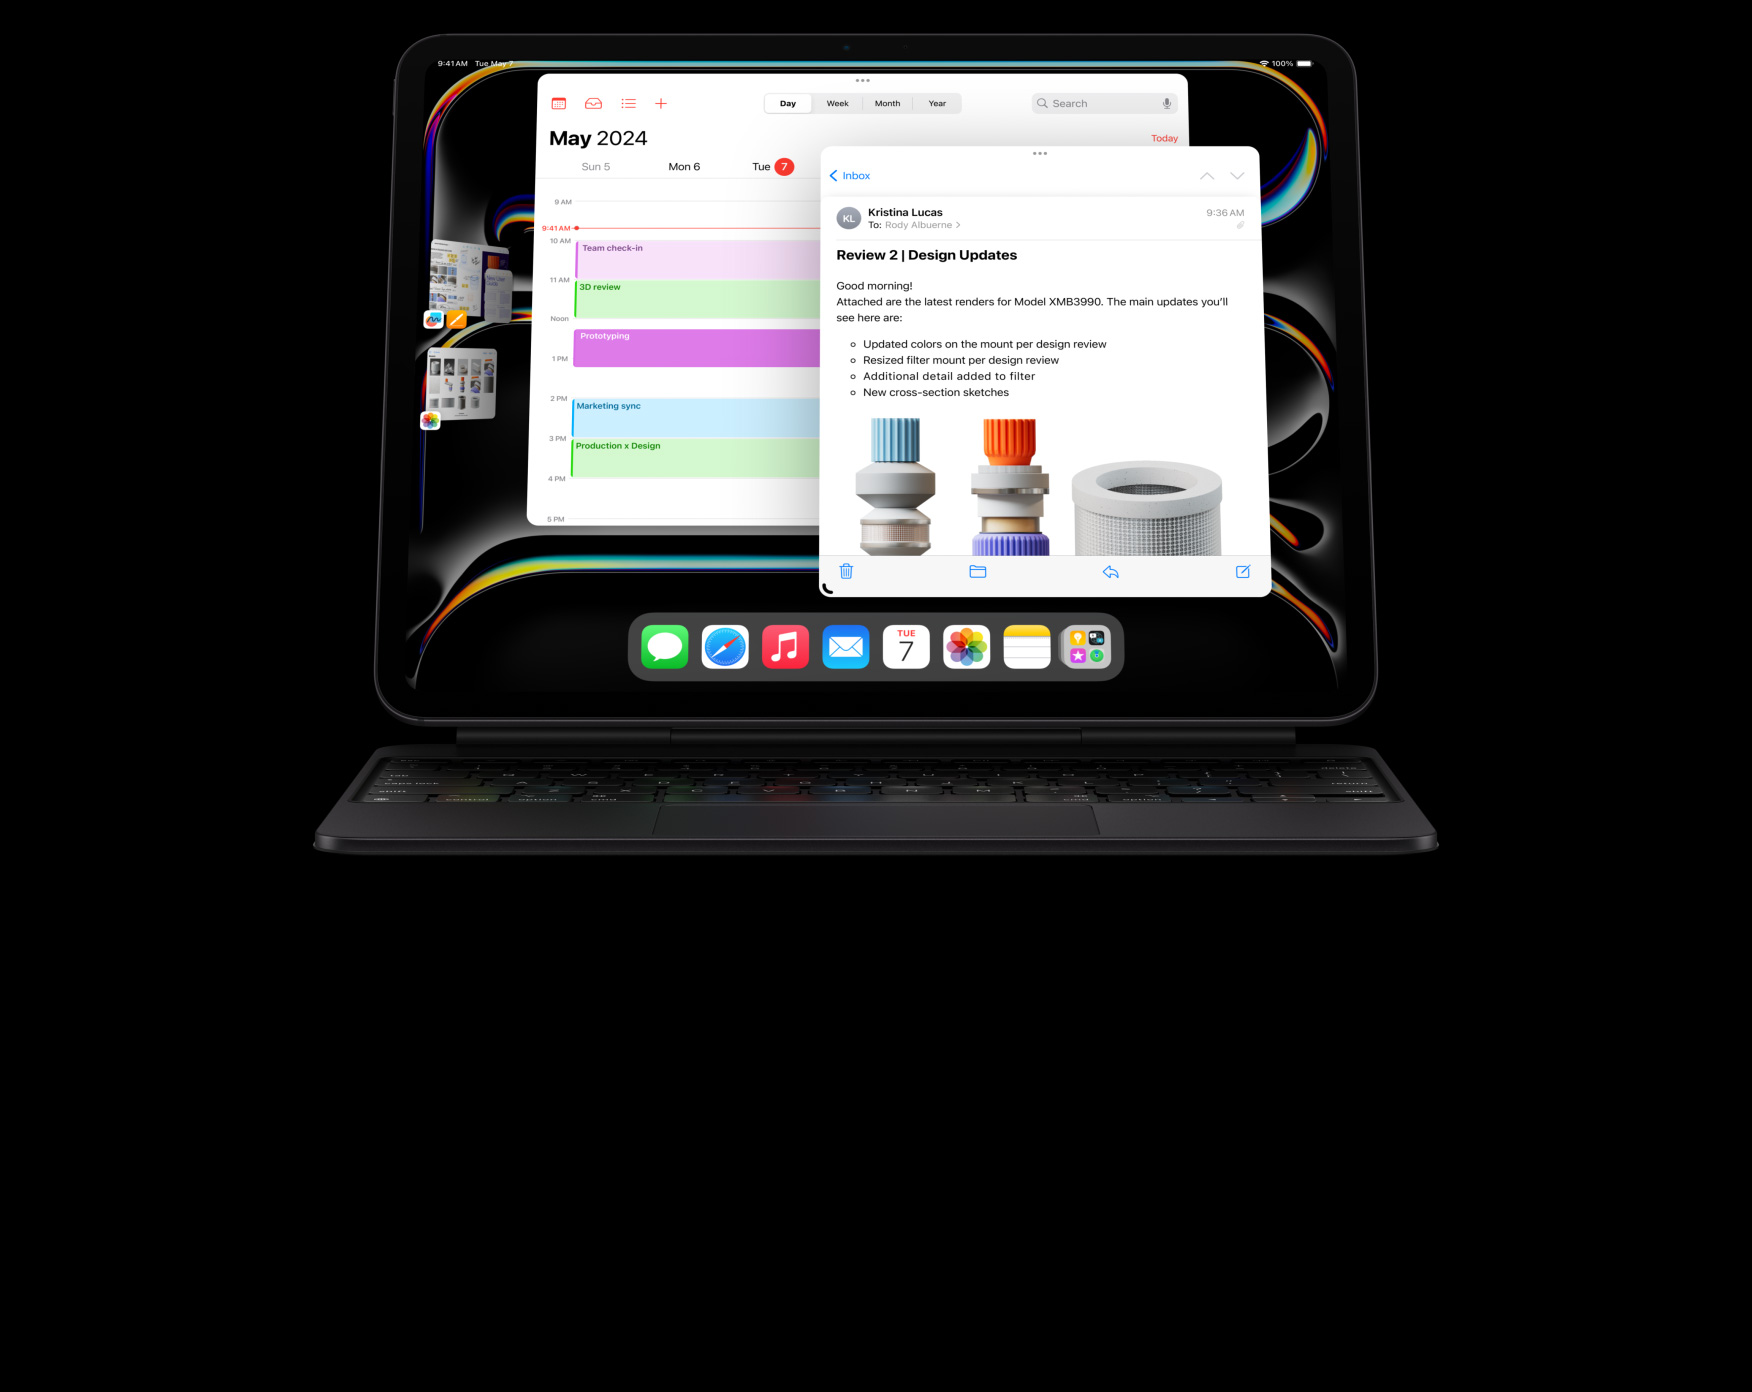 iPad Pro in horizontale stand bevestigd aan Magic Keyboard, gebruiker is aan het multitasken en heeft meerdere apps geopend